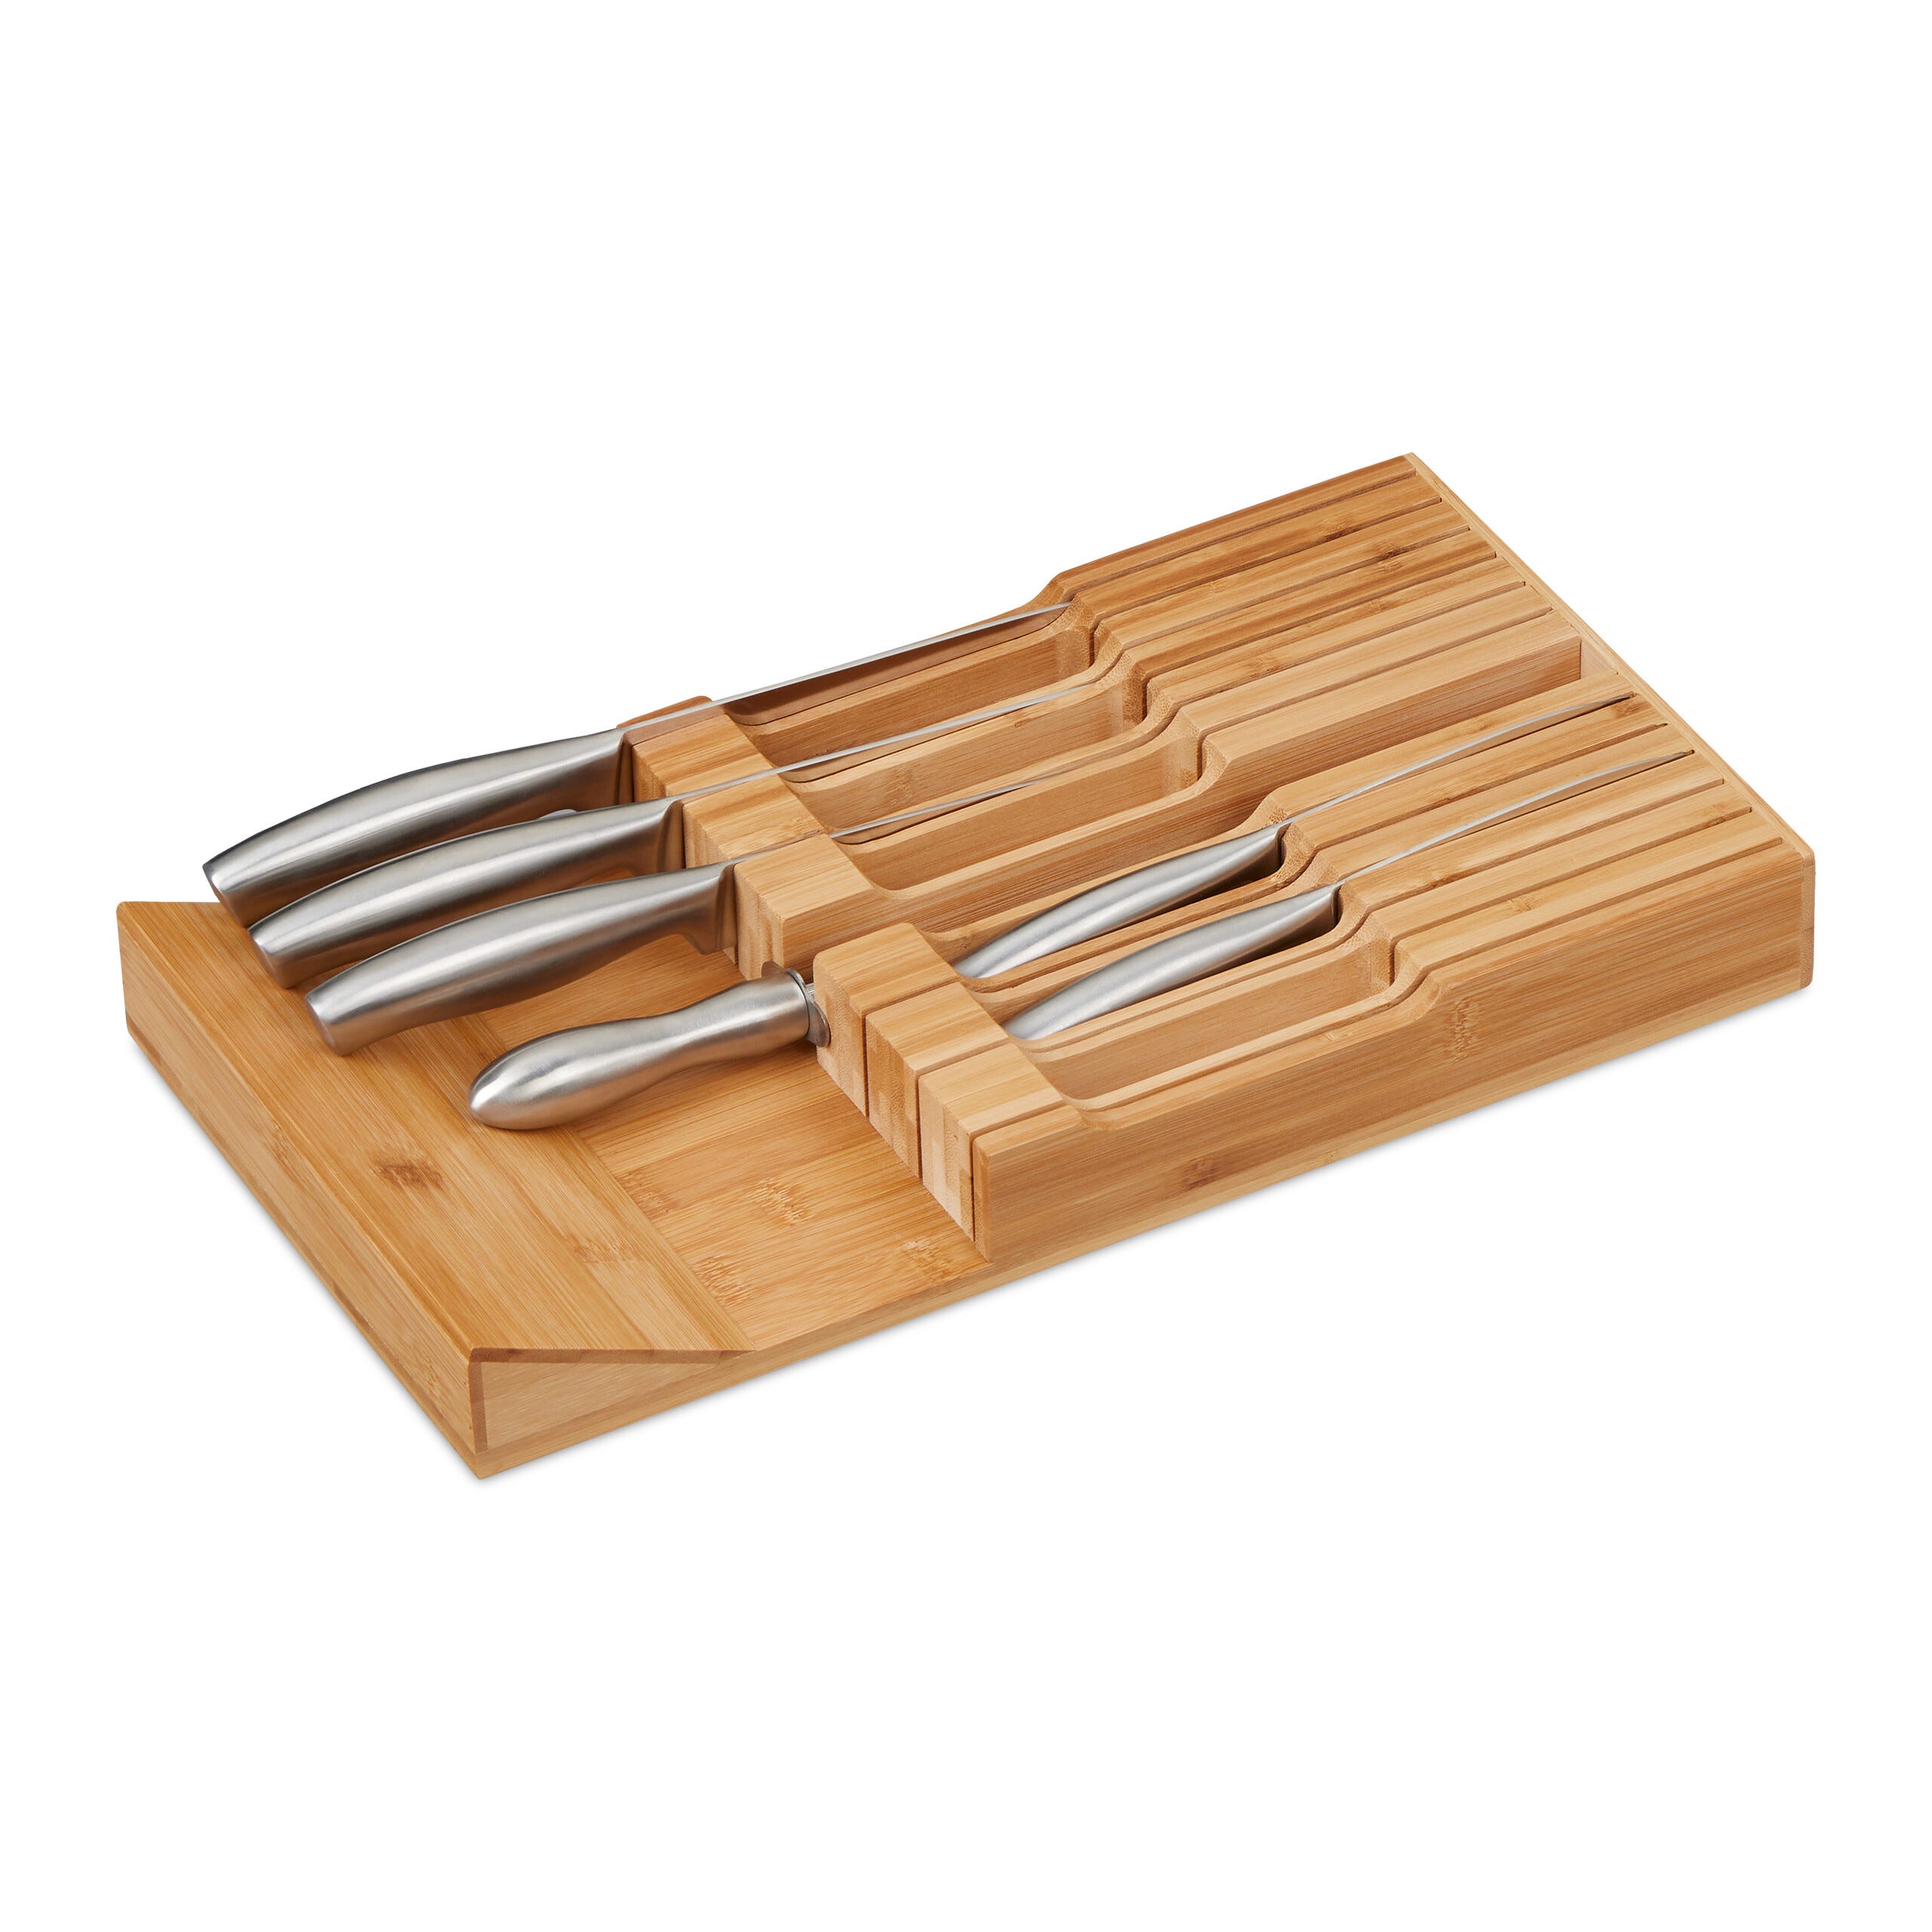 Relaxdays Range-ustensiles pour tiroir, 12 couteaux & aiguisoir, rangement  en bambou, HxLxP: env. 5 x 43 x 23 cm, nature